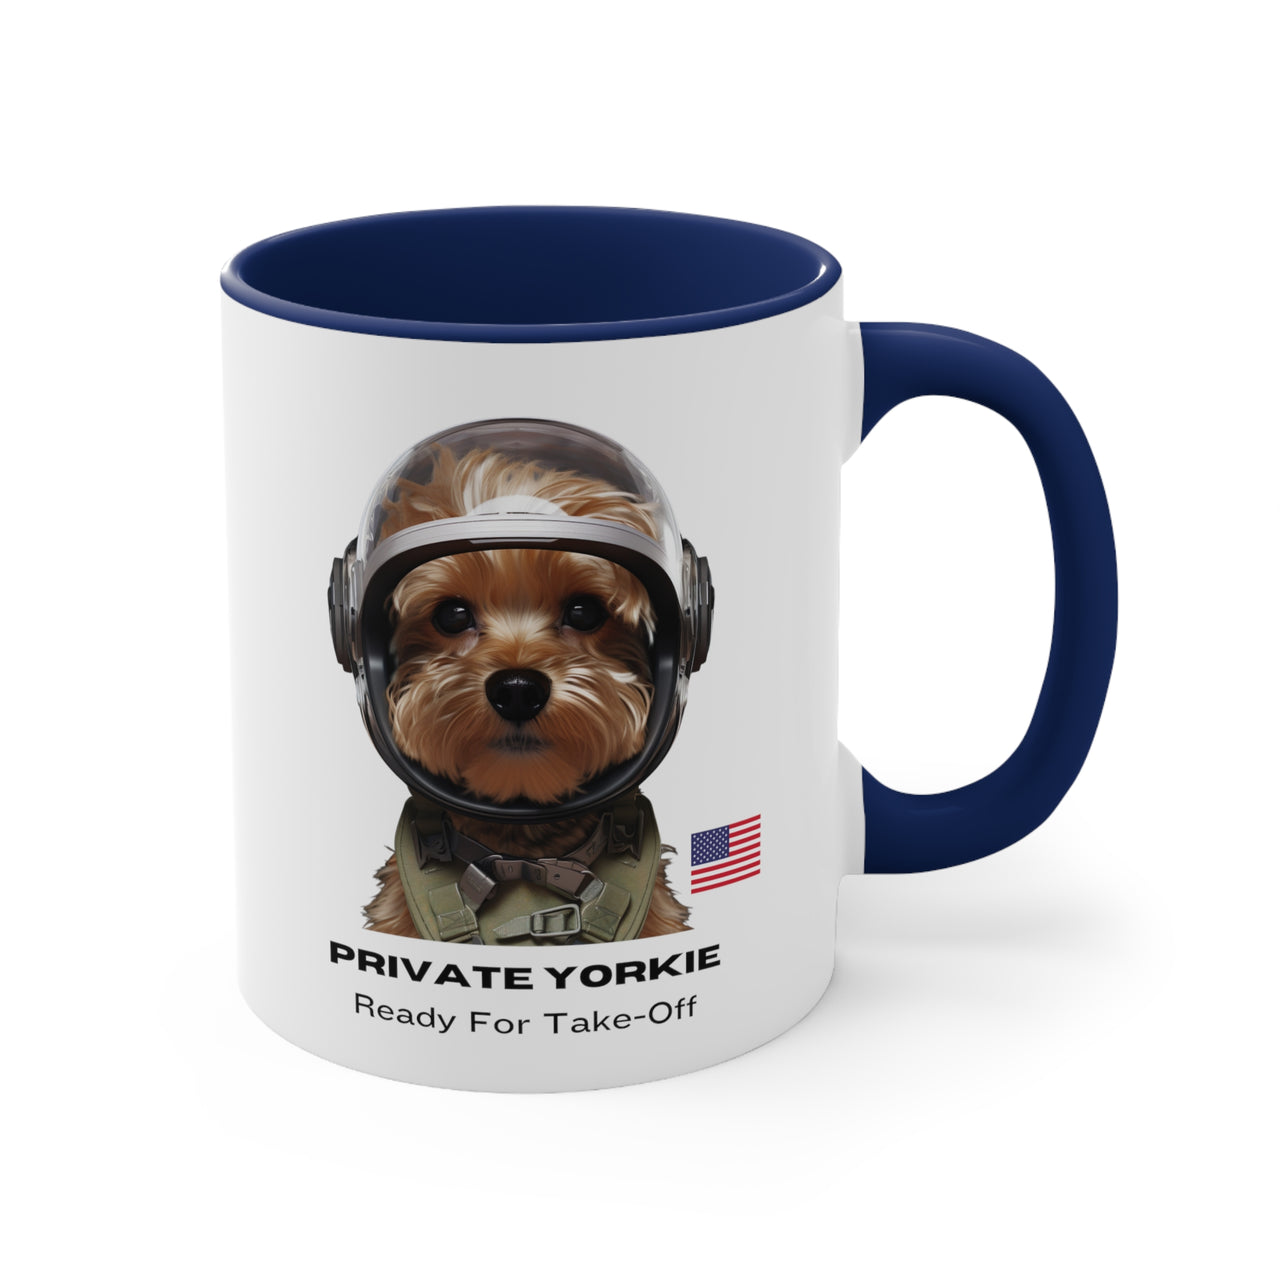 Private Yorkie Ready For Take-Off Coffee Mug, 11oz